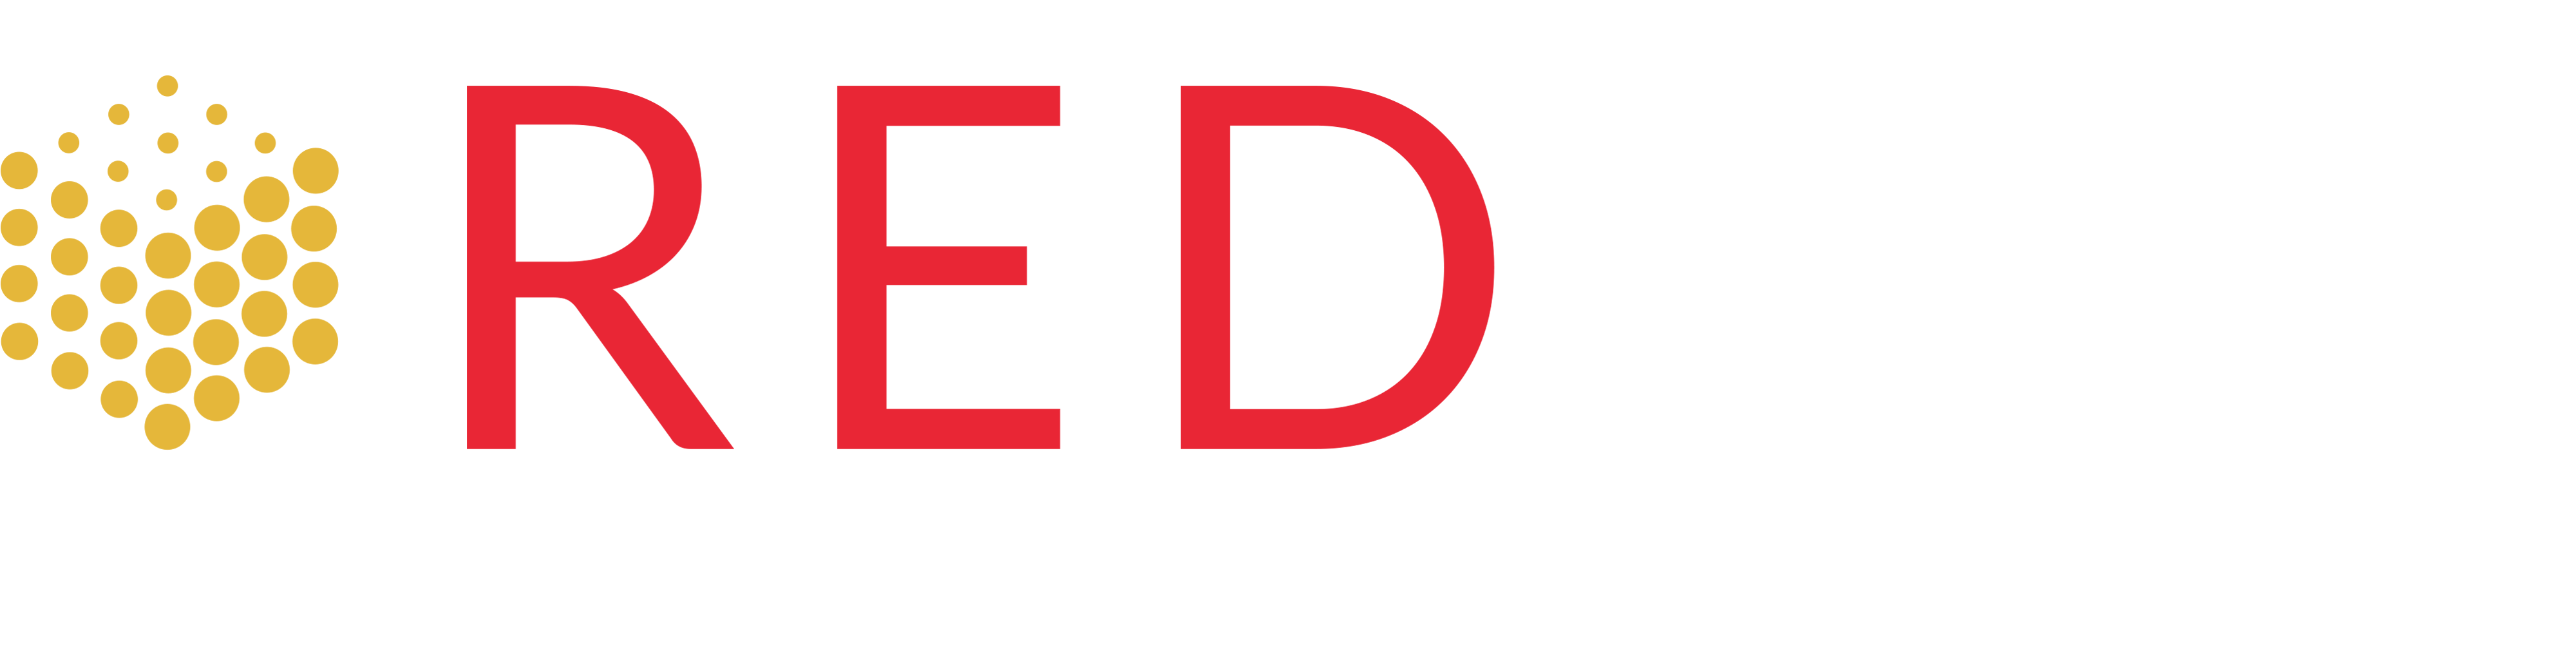 RedApp Logo